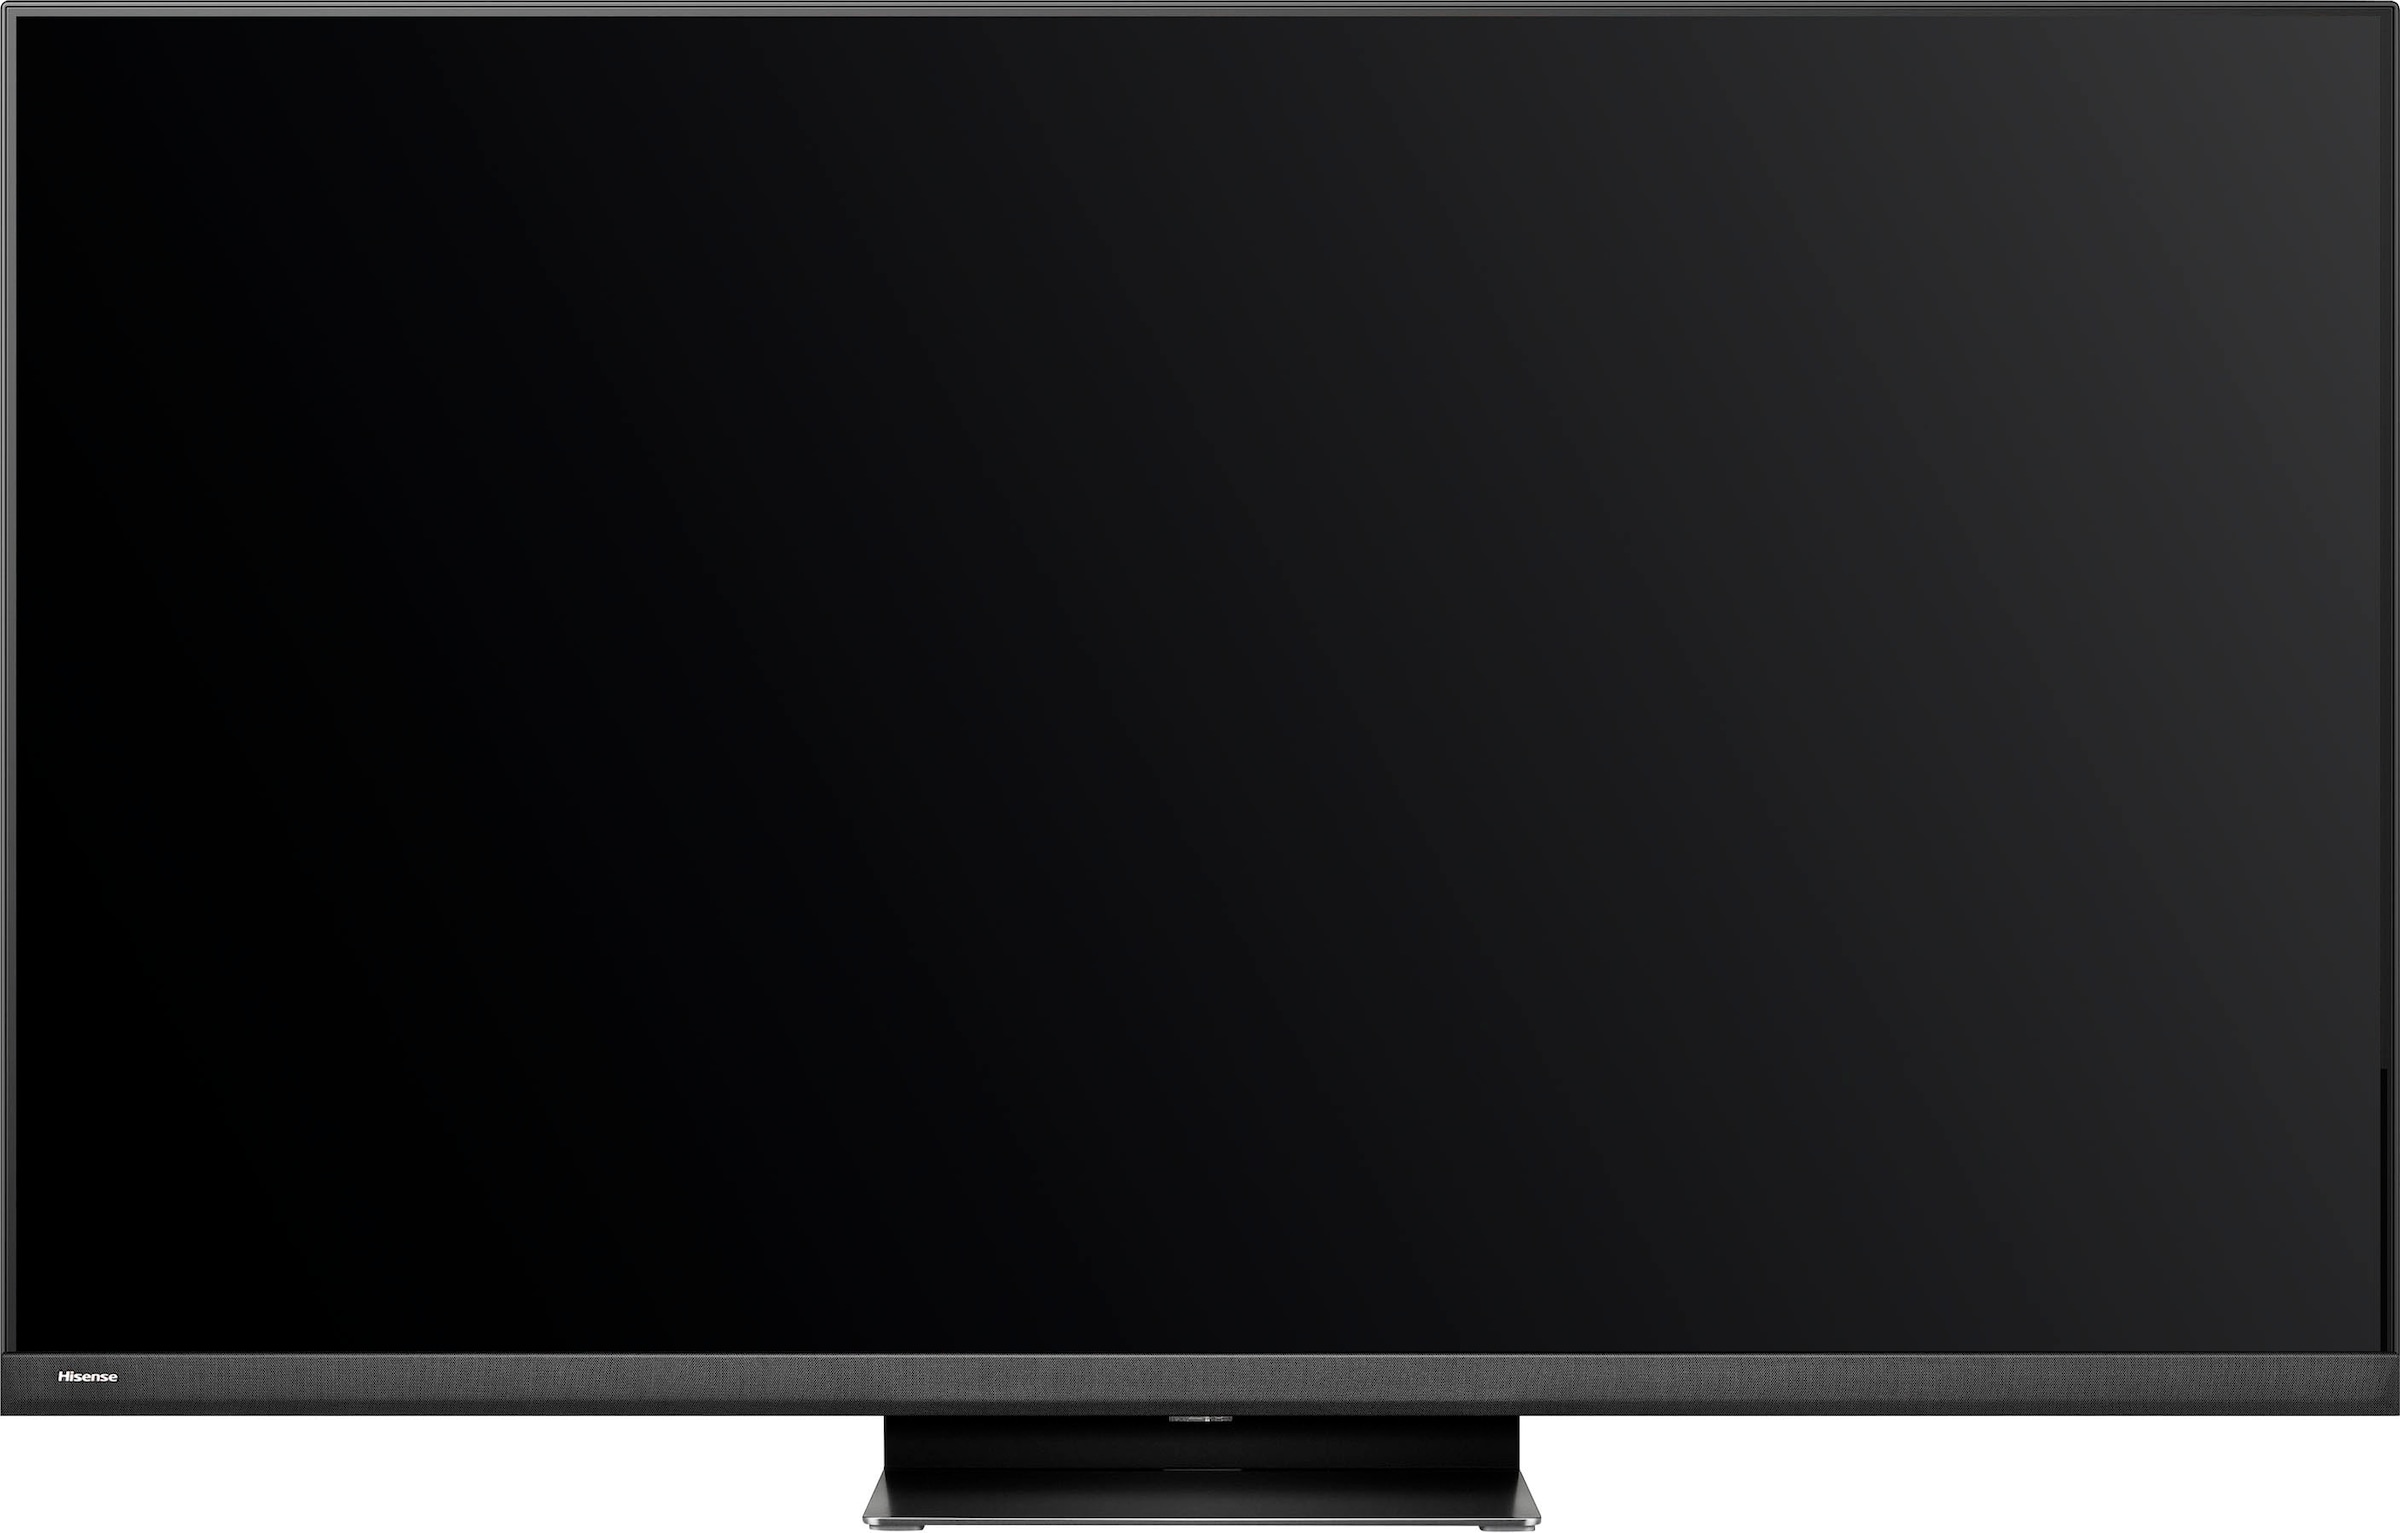 Hisense Mini-LED-Fernseher »55U8KQ«, 139 cm/55 Zoll, 4K Ultra HD, Smart-TV